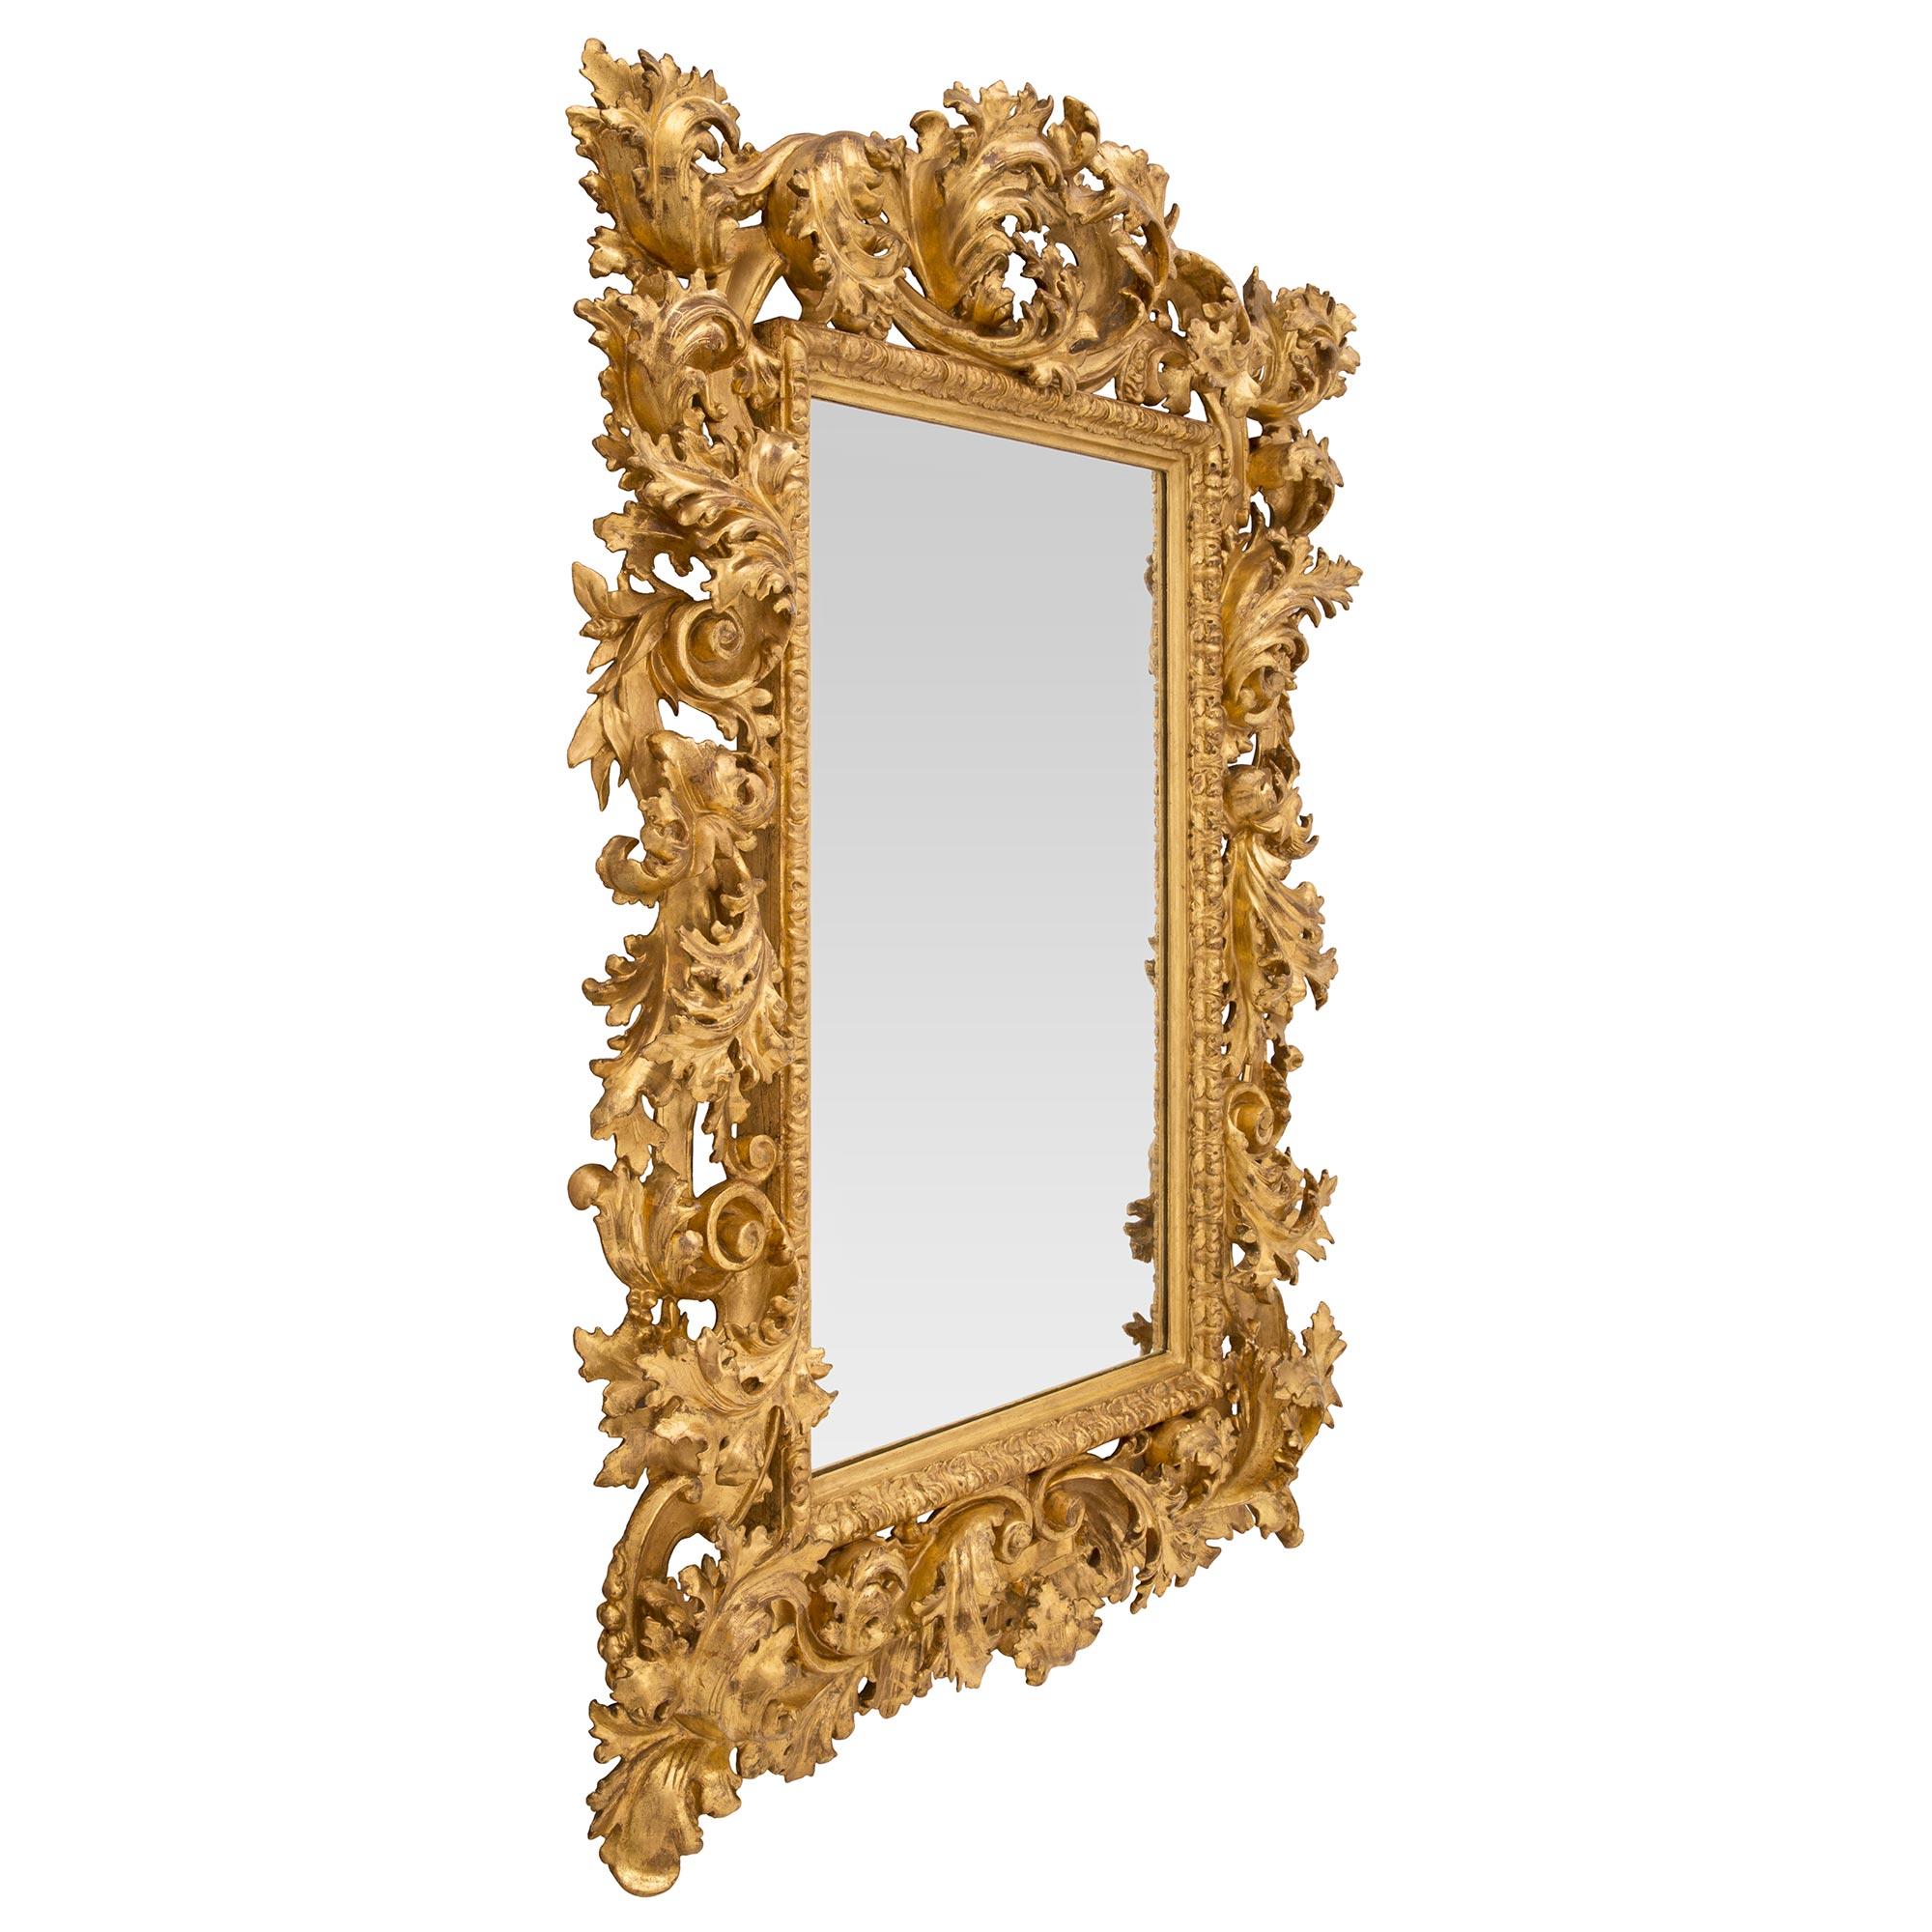 Impressionnant miroir baroque italien du 19ème siècle en bois doré. Le miroir est encadré d'une fine bordure droite tachetée avec une fine bande de feuillage enveloppante. Le cadre extérieur en bois massif présente une étonnante série de grandes